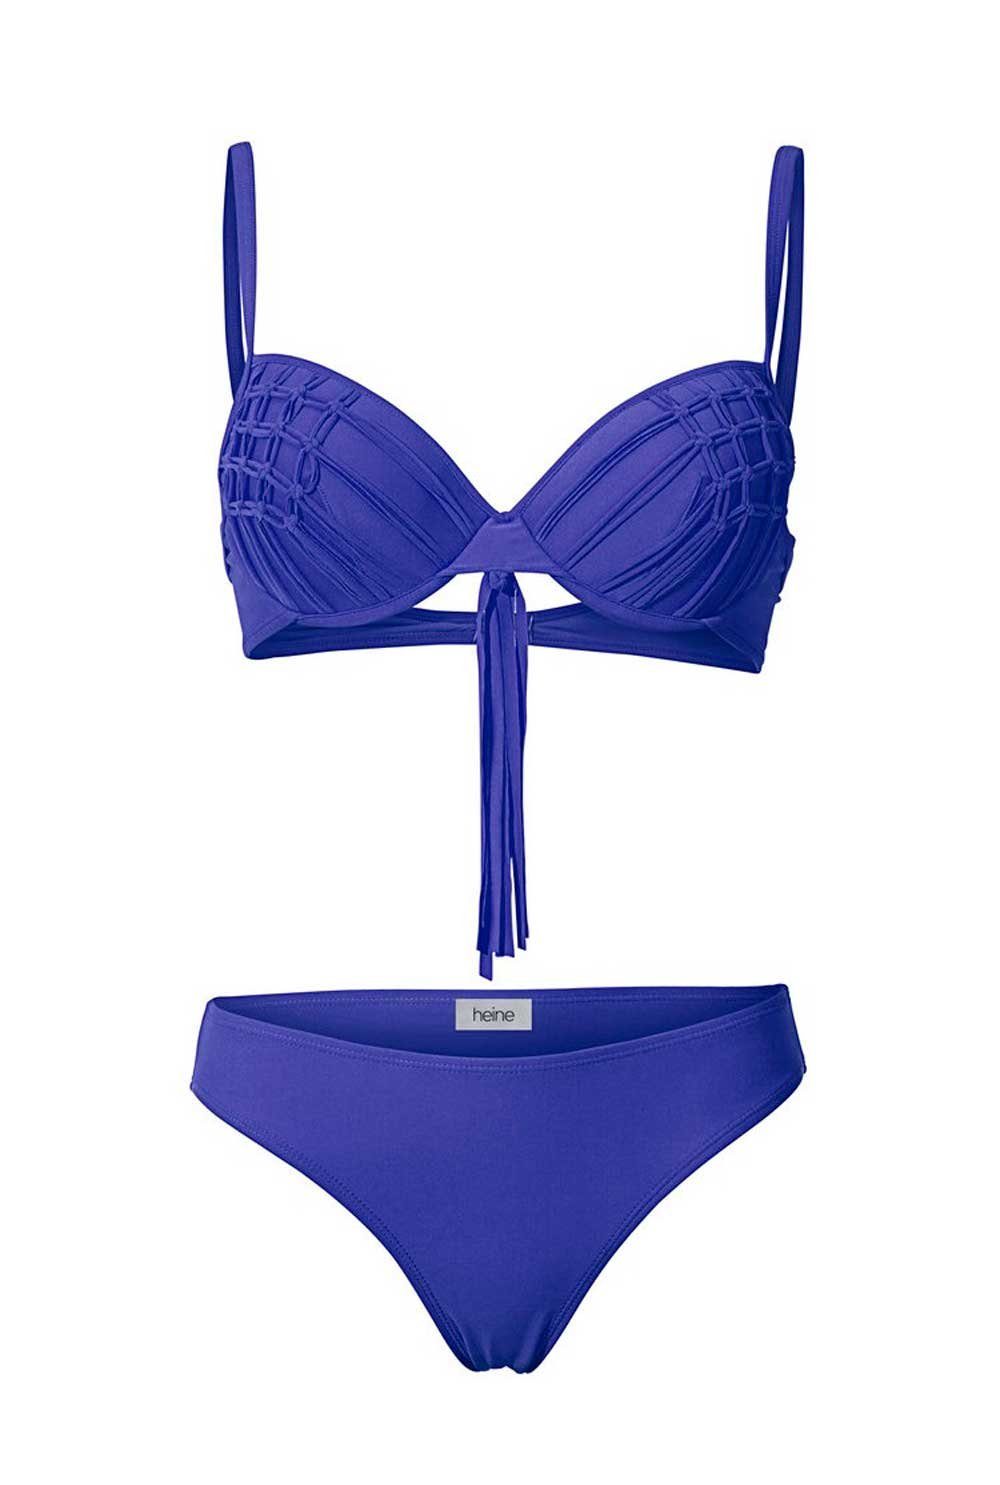 Heine Bügel-Bikini »Heine Damen Softcup-Bikini, blau« online kaufen | OTTO